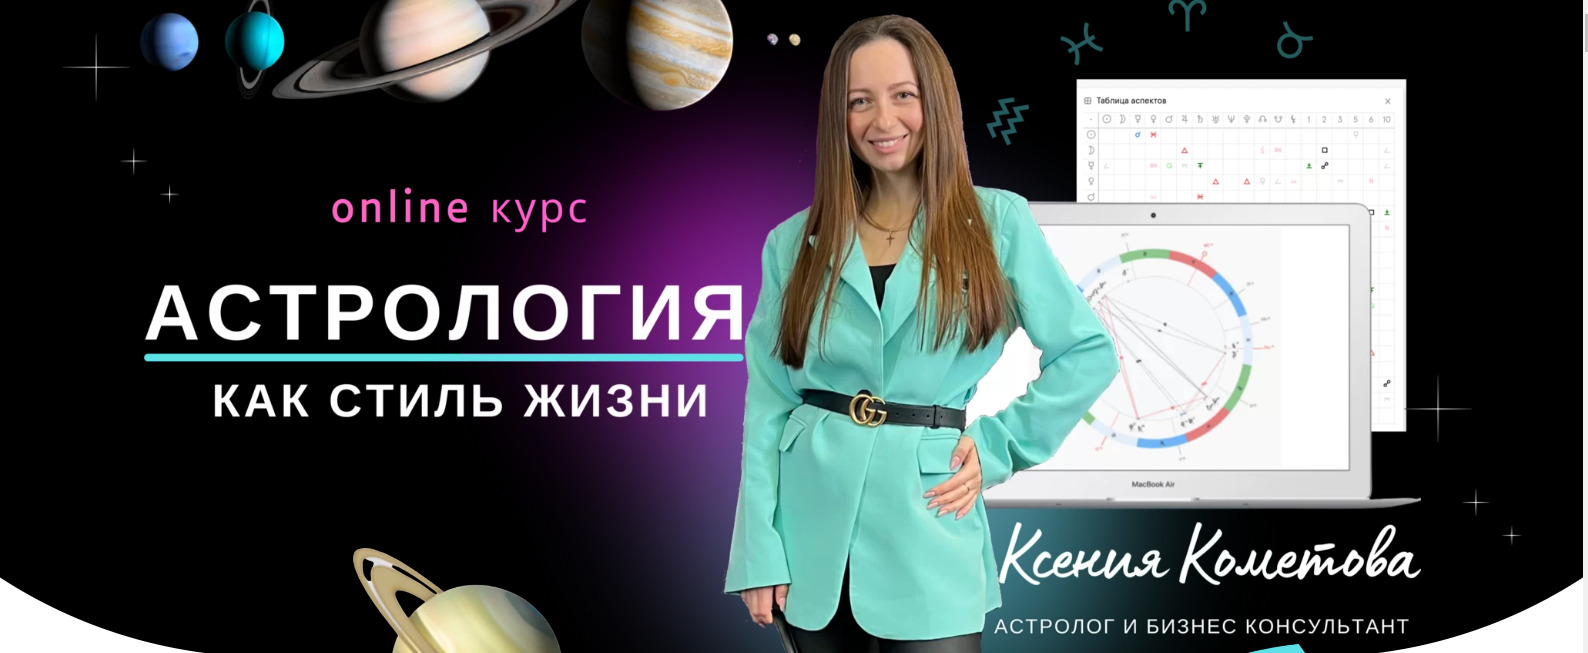 астролог Ксения Кометова сайт